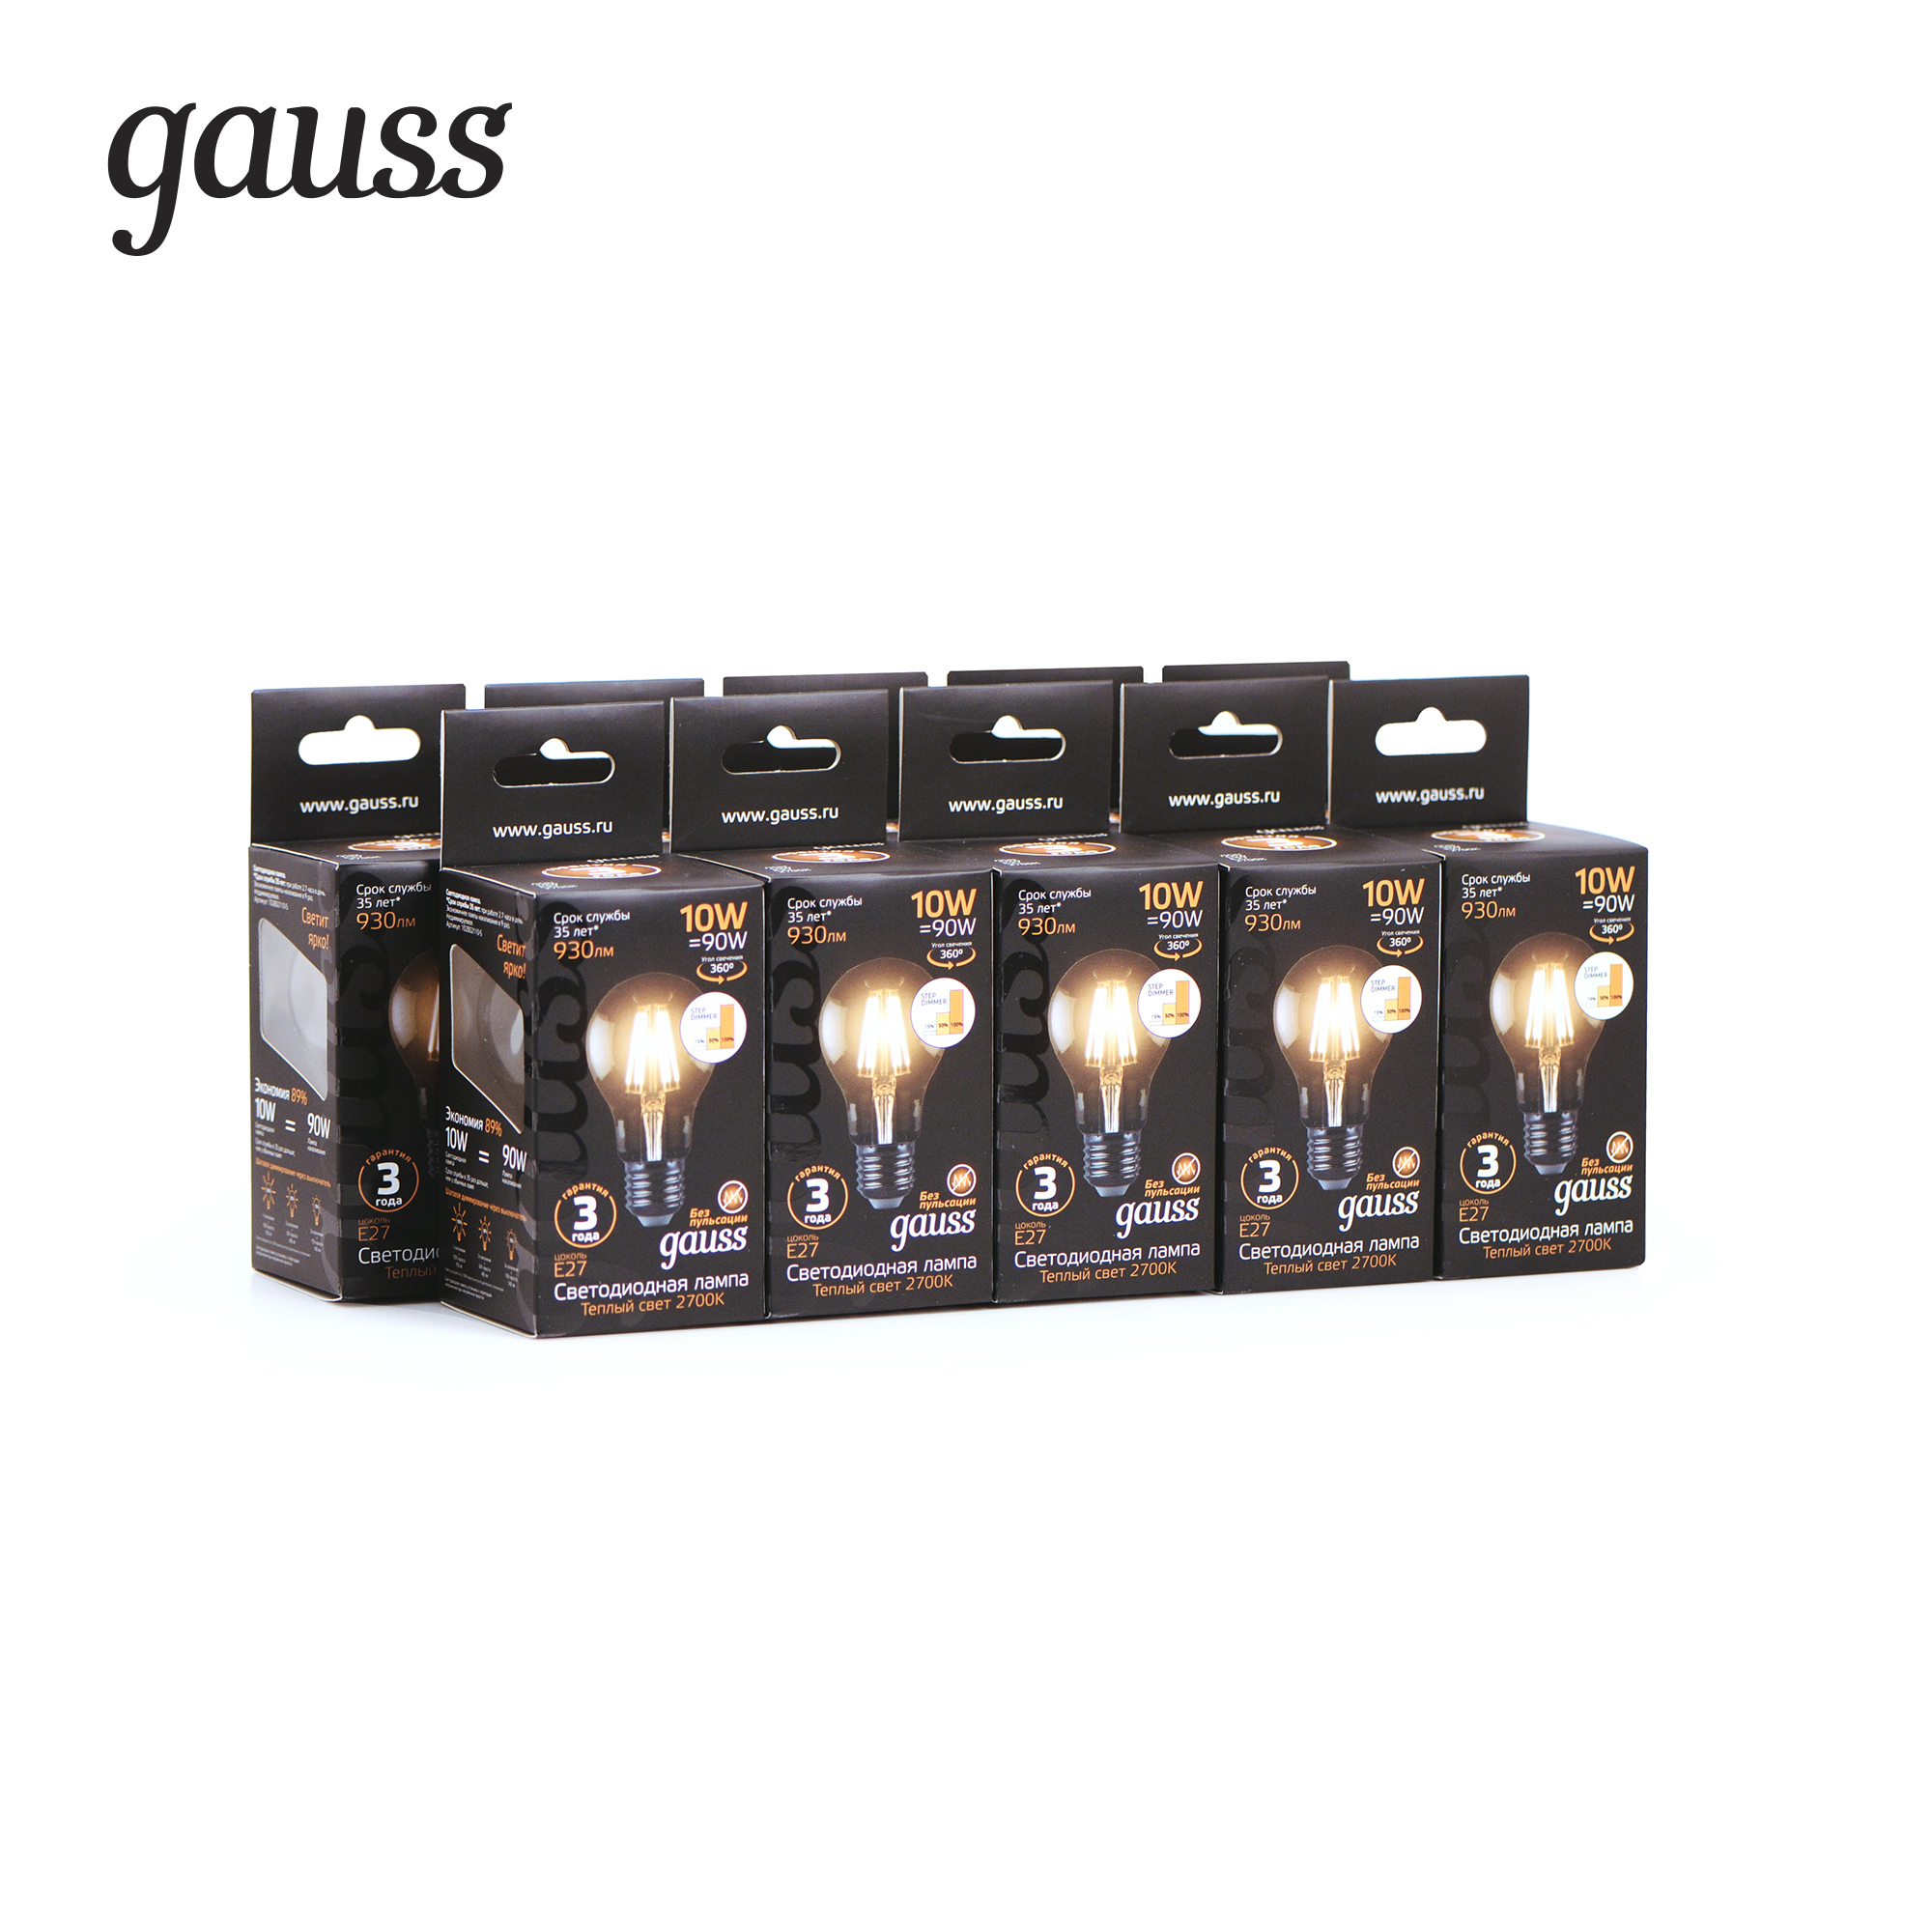 Филаментная светодиодная лампа Gauss 102802110-S груша E27 10W, 2700K (теплый) CRI>90 185-265V, диммируемая, гарантия 3 года - фото 3